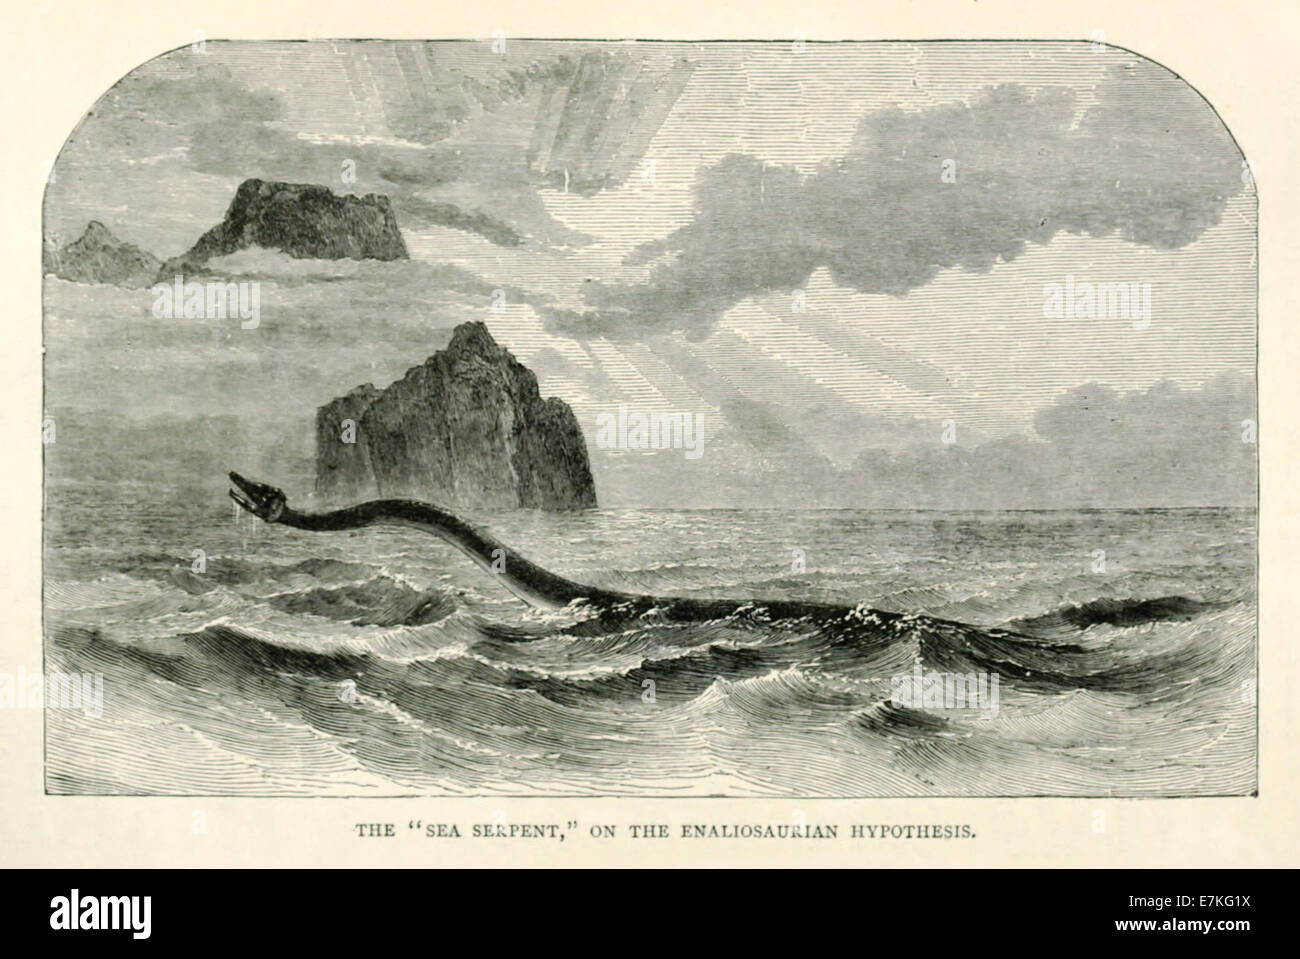 Seeschlange, Abbildung der Überlebende Dinosaurier als Erklärung der Sichtungen. Siehe Beschreibung für weitere Informationen. Stockfoto